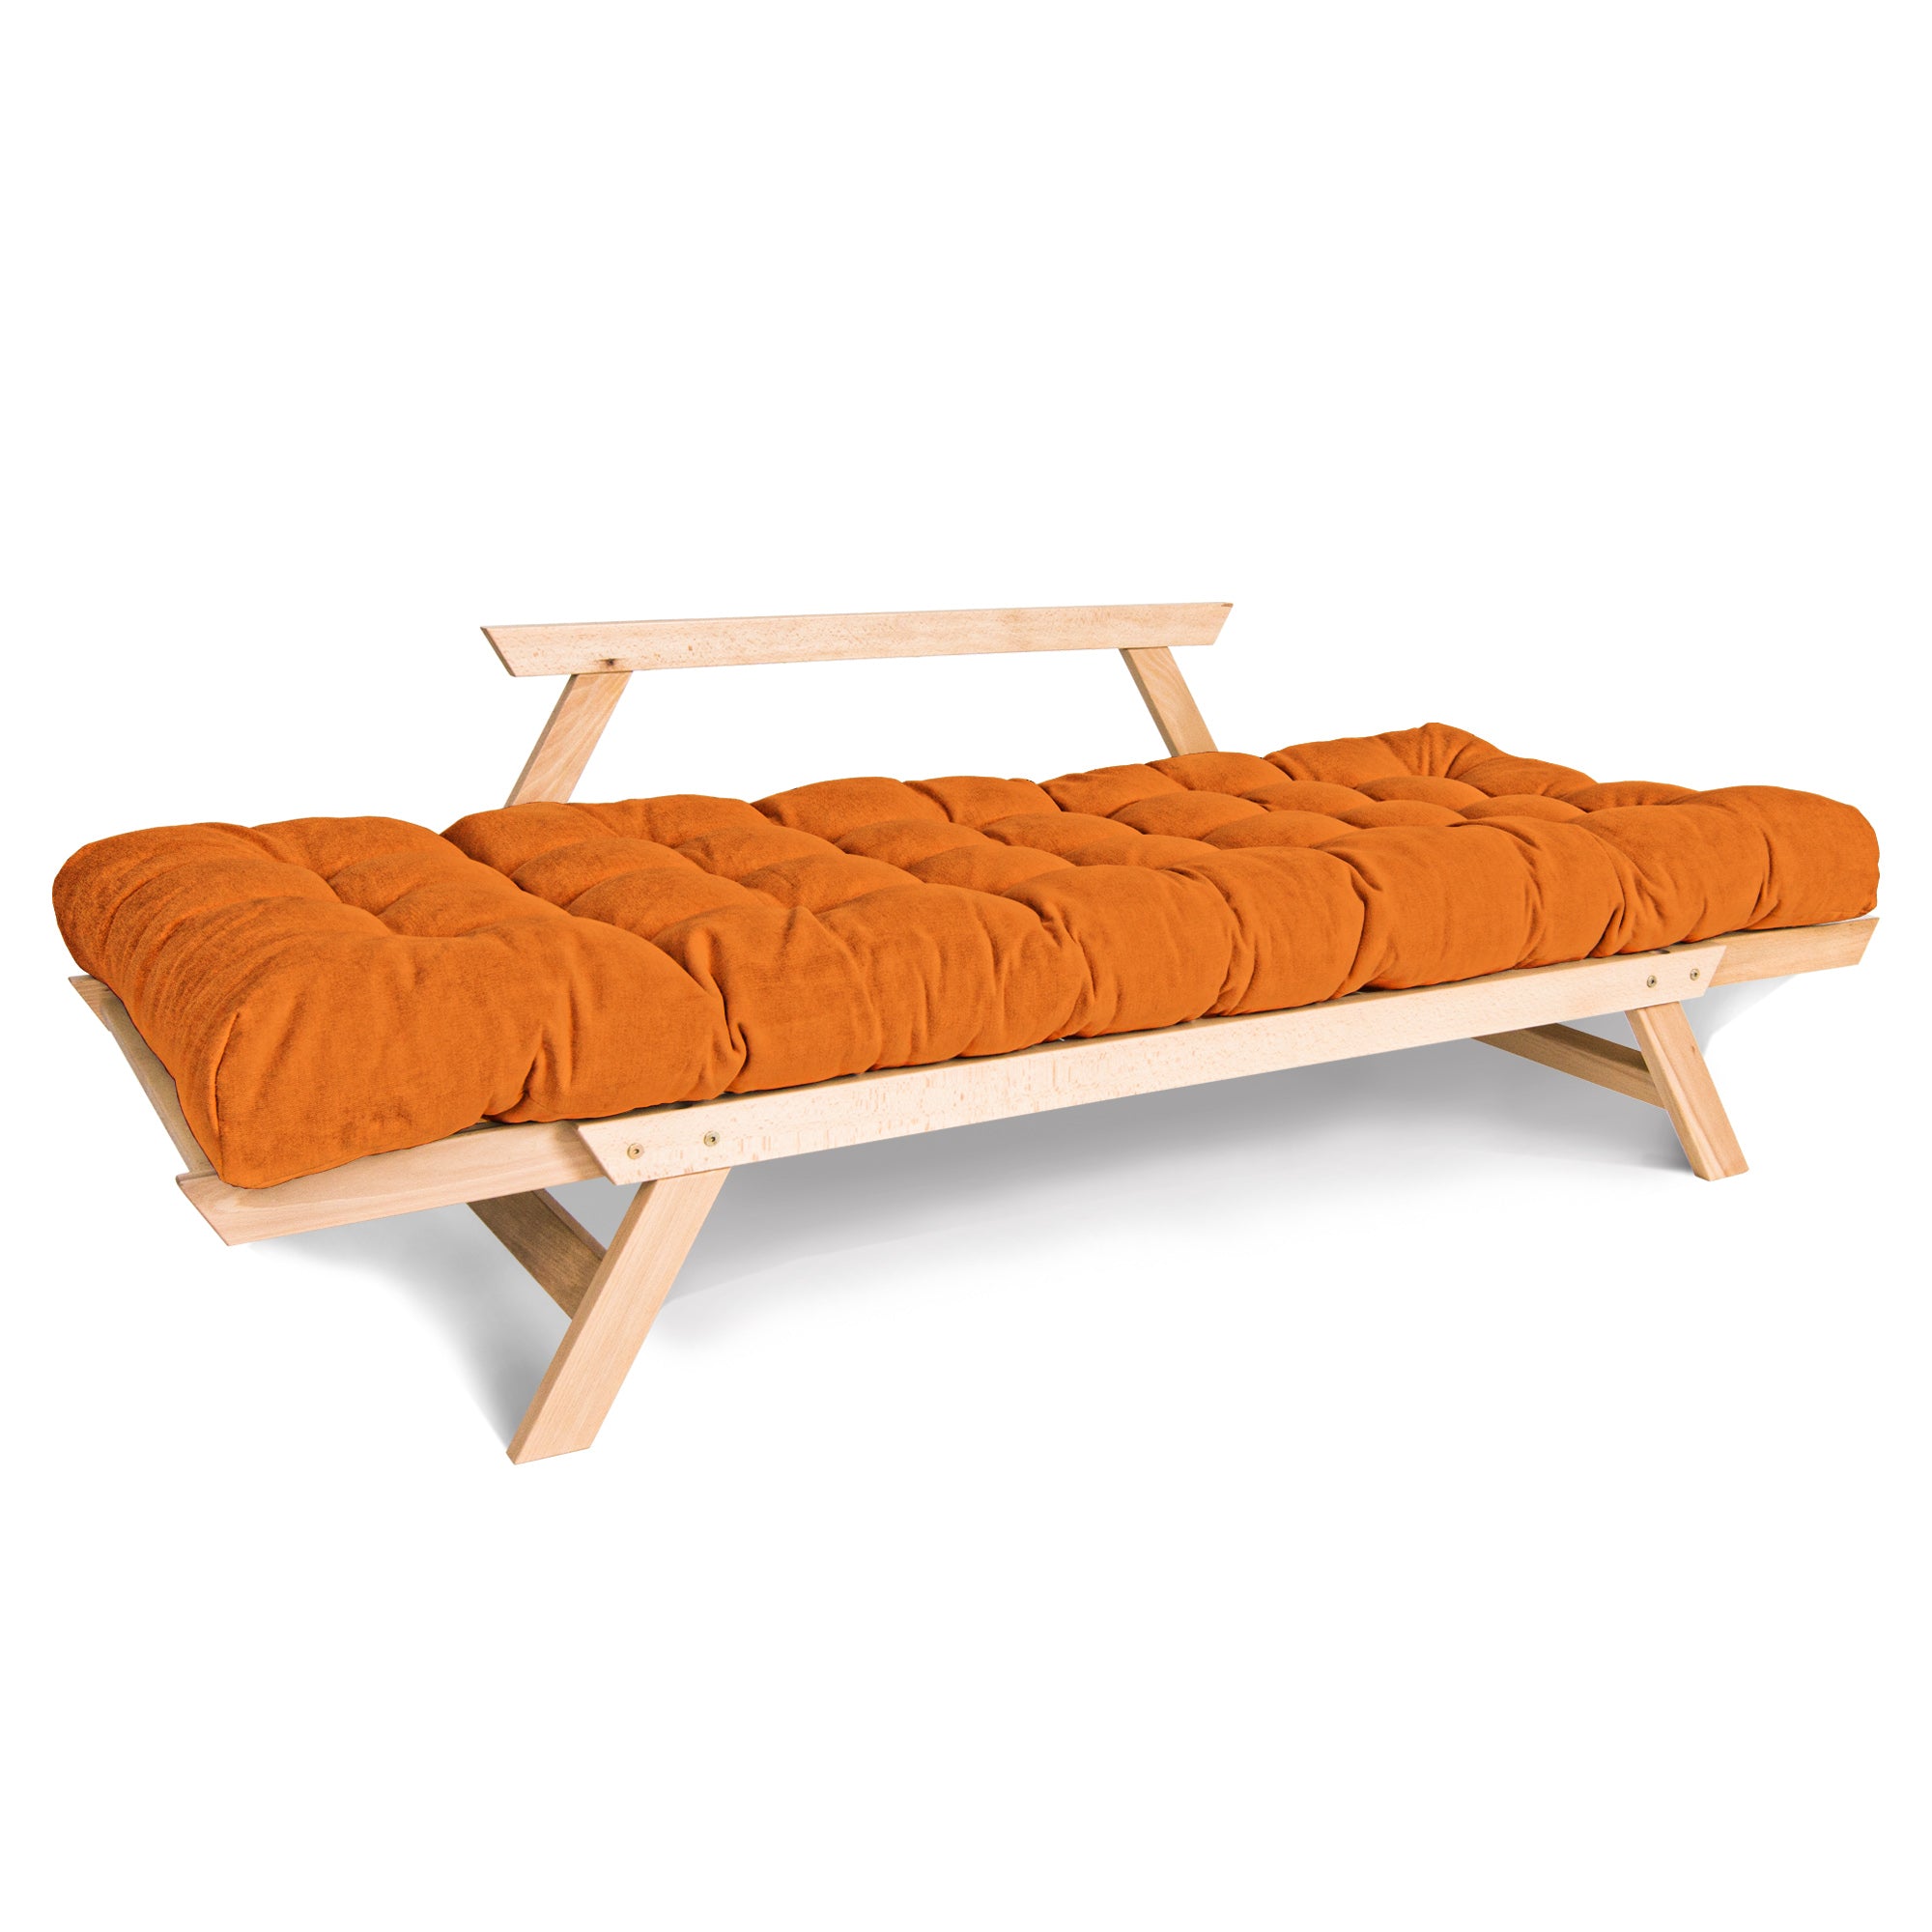 ALLEGRO Canapé-lit, cadre en bois de hêtre, couleur naturelle